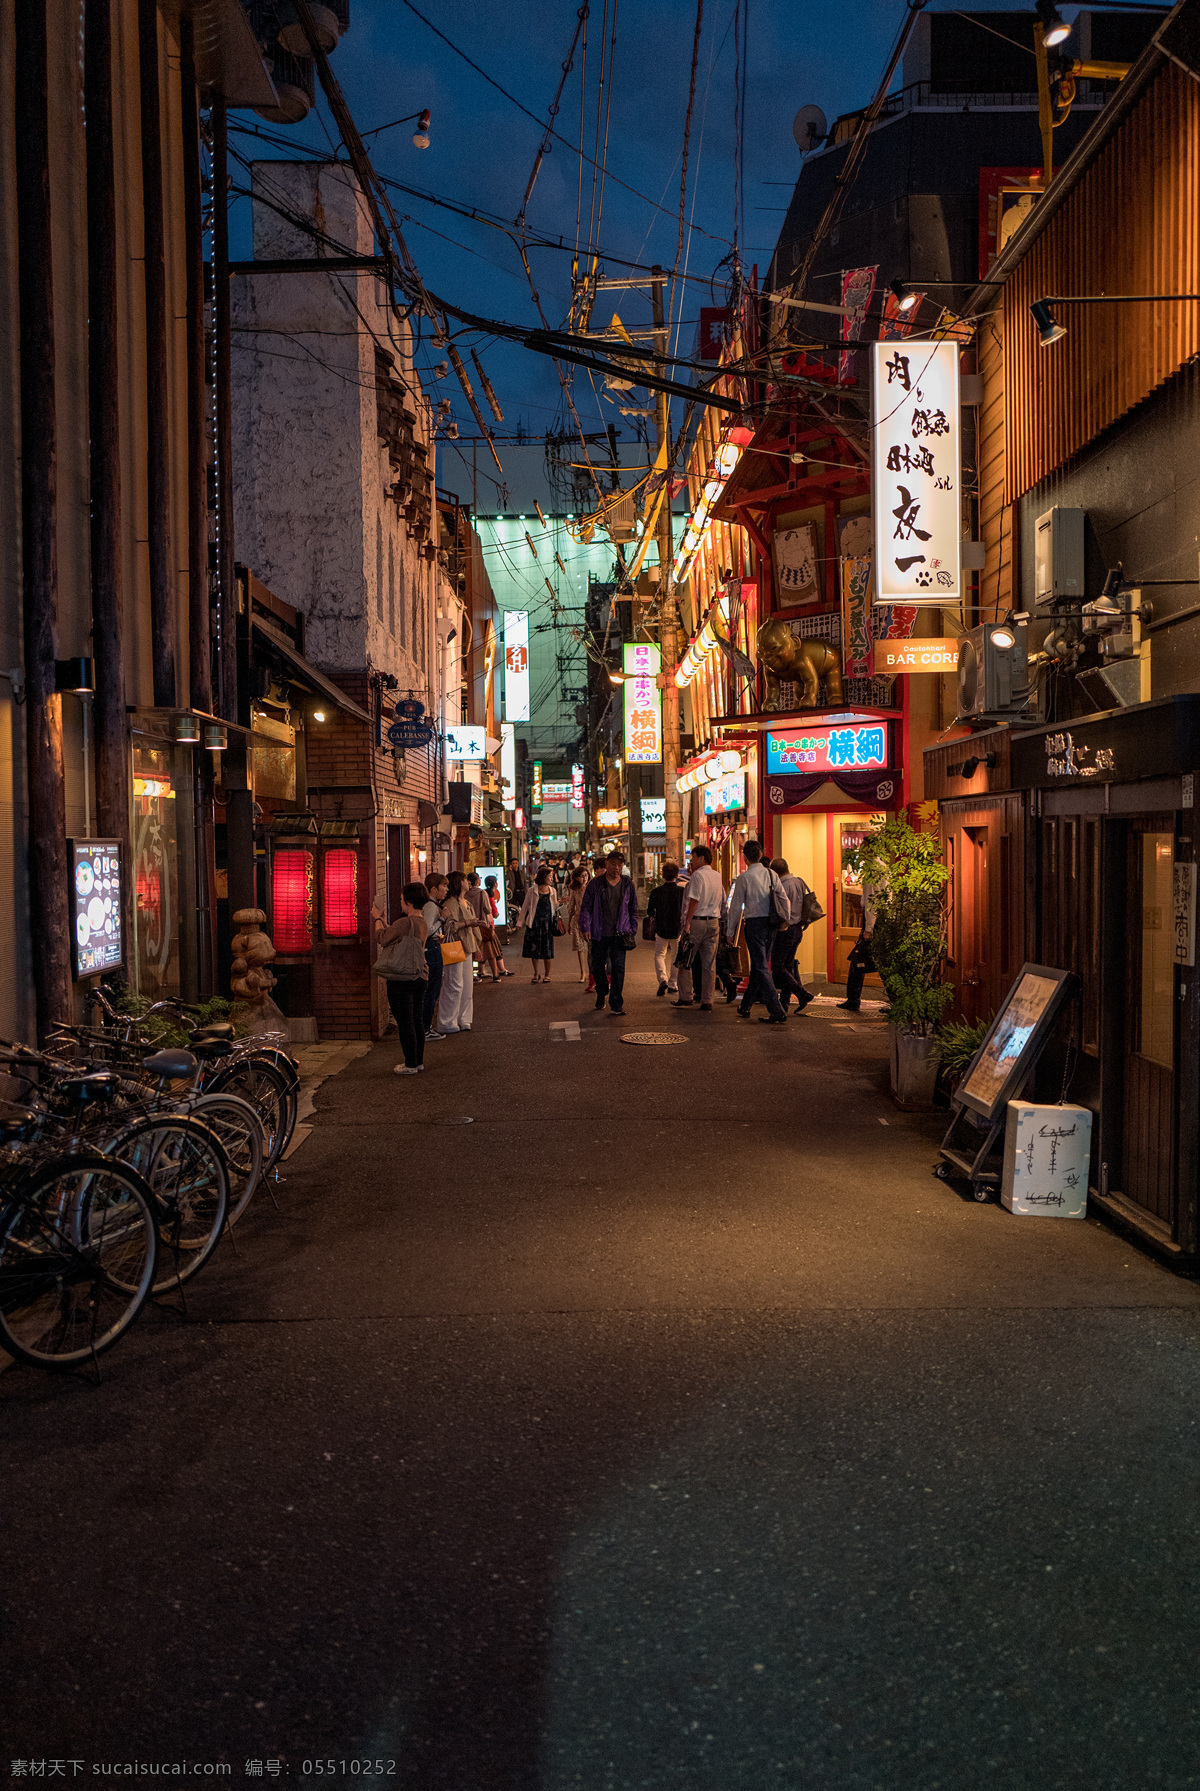 大阪 夜景 竖 版 街头 日本商业街 大阪夜景 日本街拍 道顿崛 城市夜景 旅游摄影 国外旅游